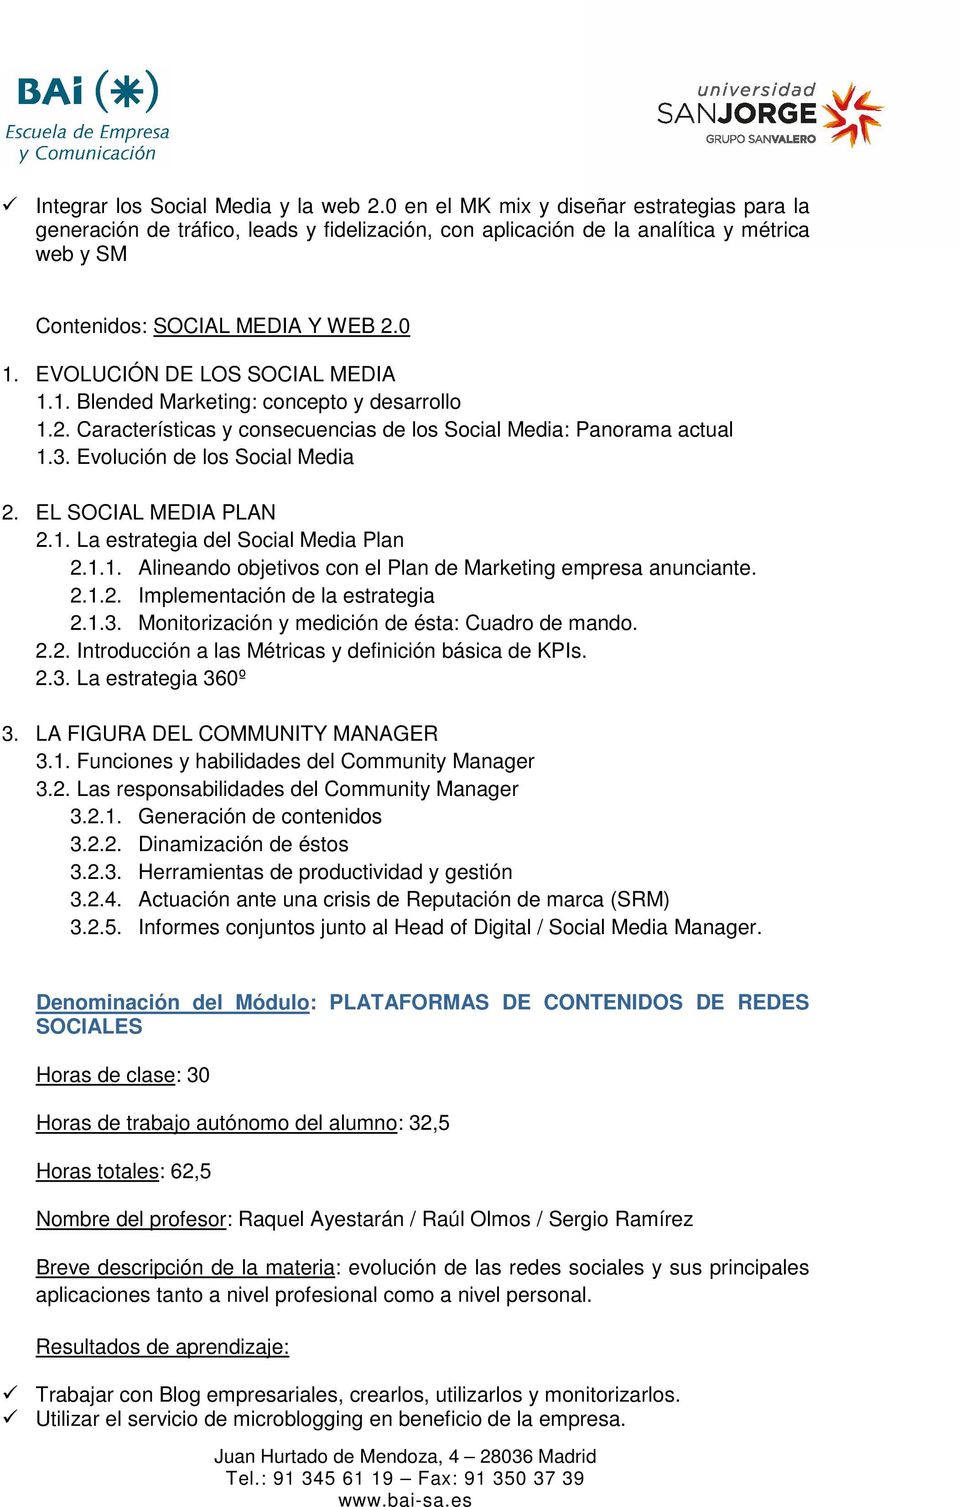 EVOLUCIÓN DE LOS SOCIAL MEDIA 1.1. Blended Marketing: concepto y desarrollo 1.2. Características y consecuencias de los Social Media: Panorama actual 1.3. Evolución de los Social Media 2.